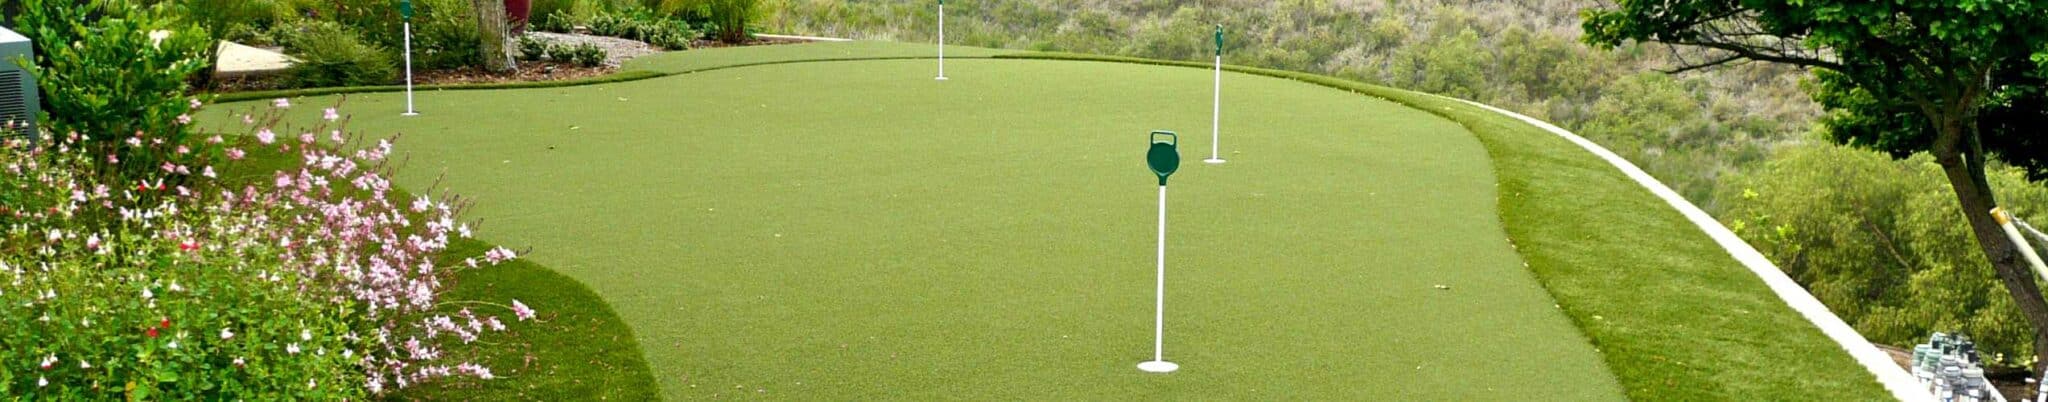 Backyard golf green installed by SYNLawn